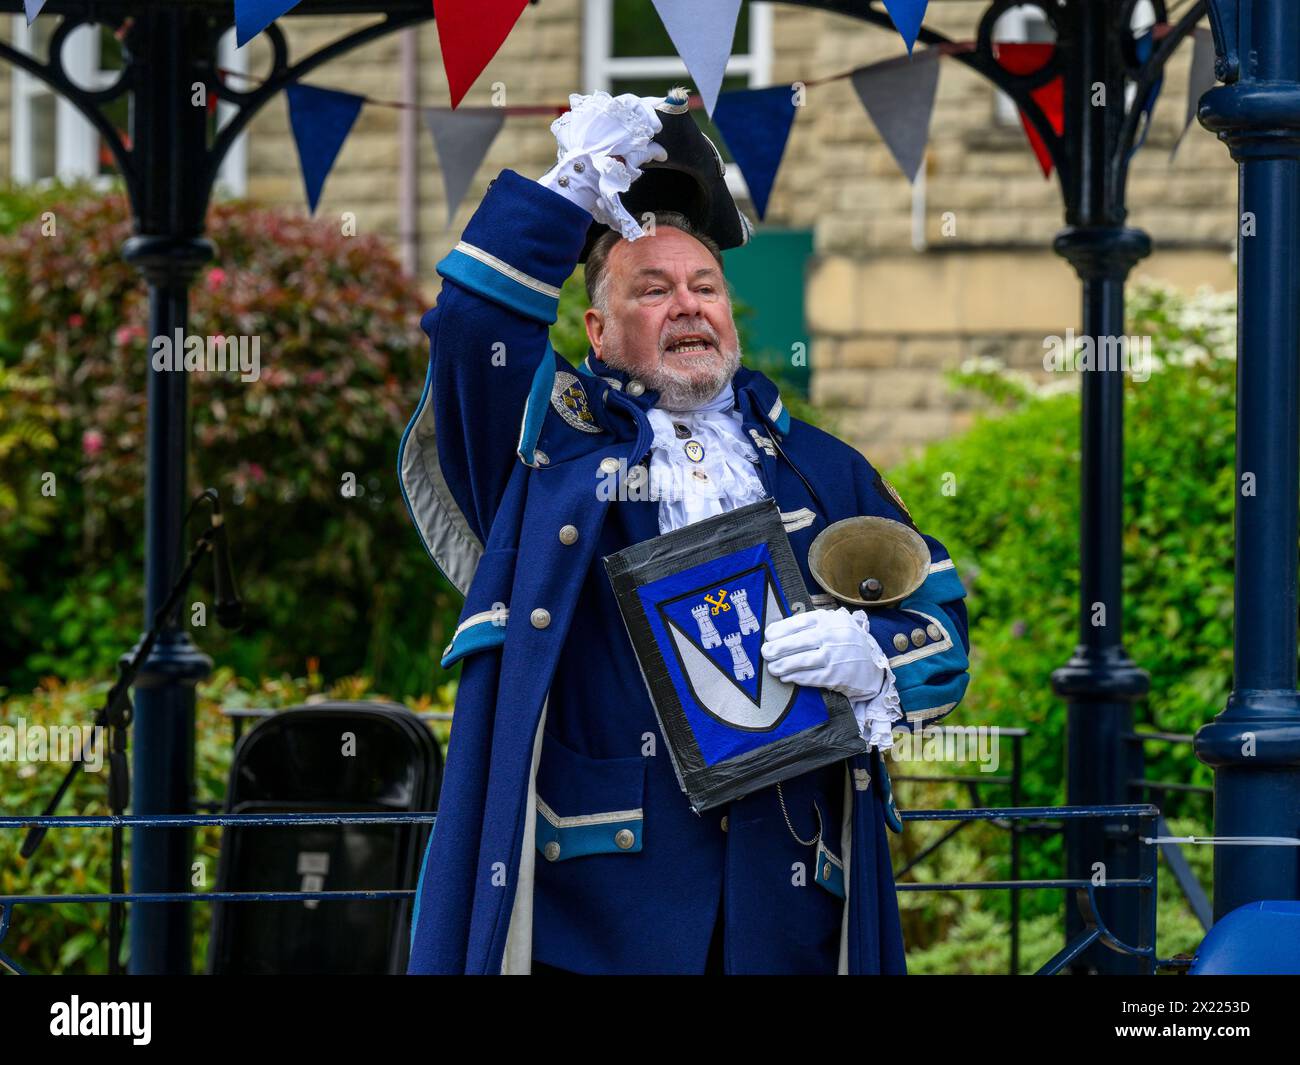 Männlicher Stadtschrei und Pagen (blaue Schreie und Kleidung), der laut laut öffentliche Proklamation und Ankündigung macht - Ilkley, West Yorkshire, England, Großbritannien. Stockfoto